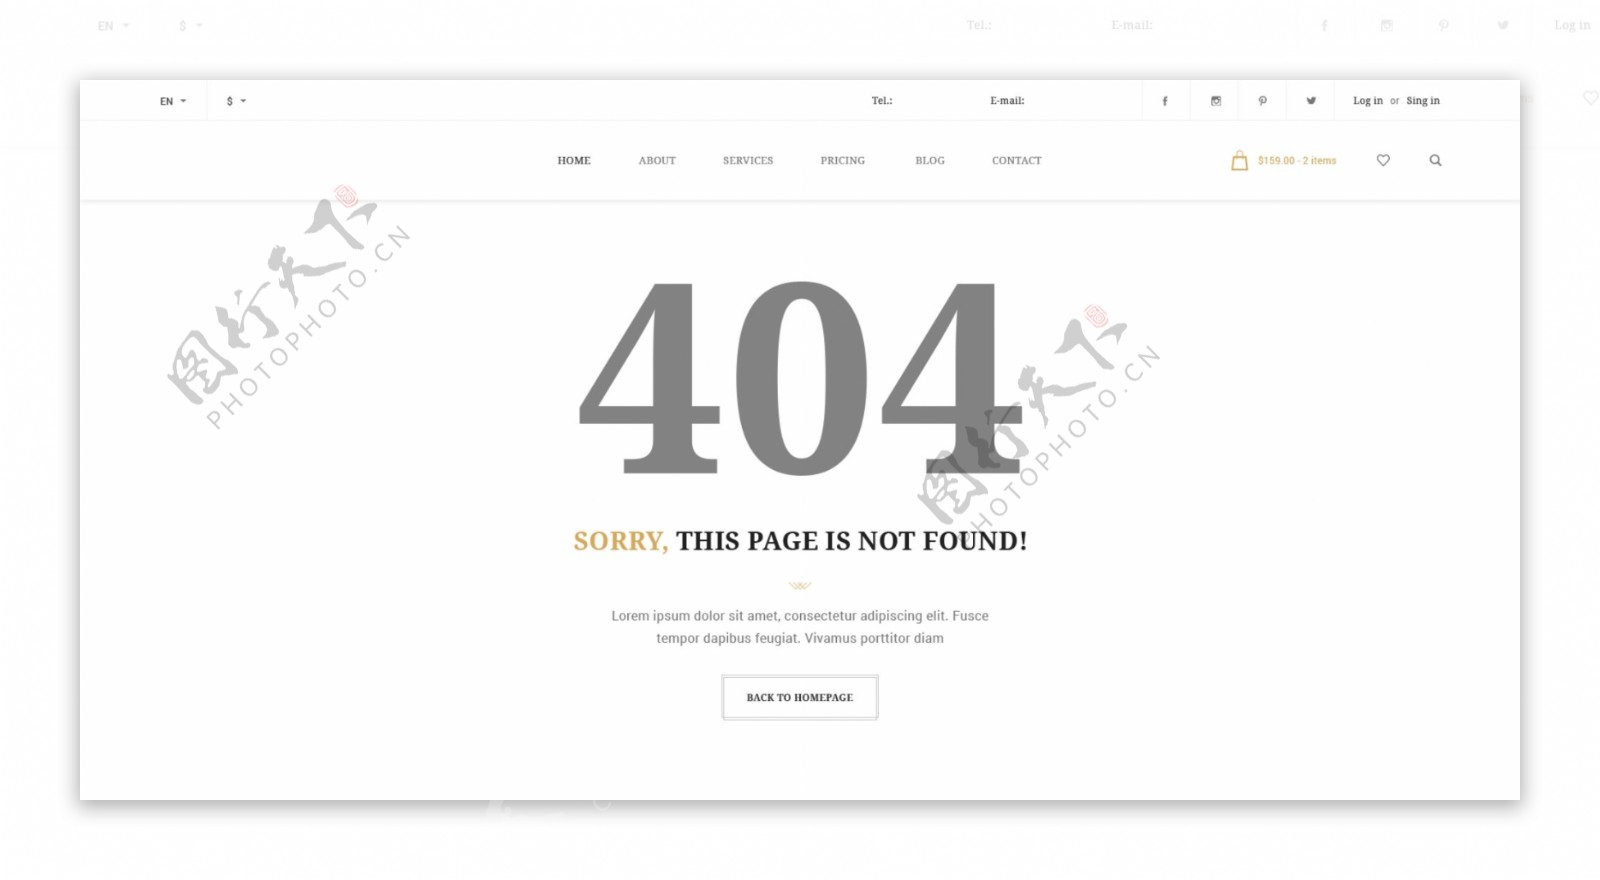 简约网站404页面设计PSD模板